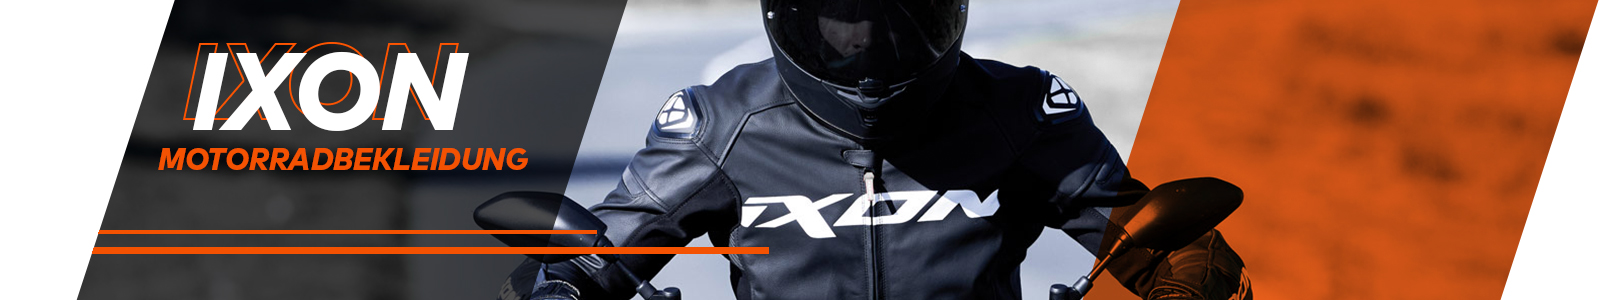 Ixon Motorcycle Clothing